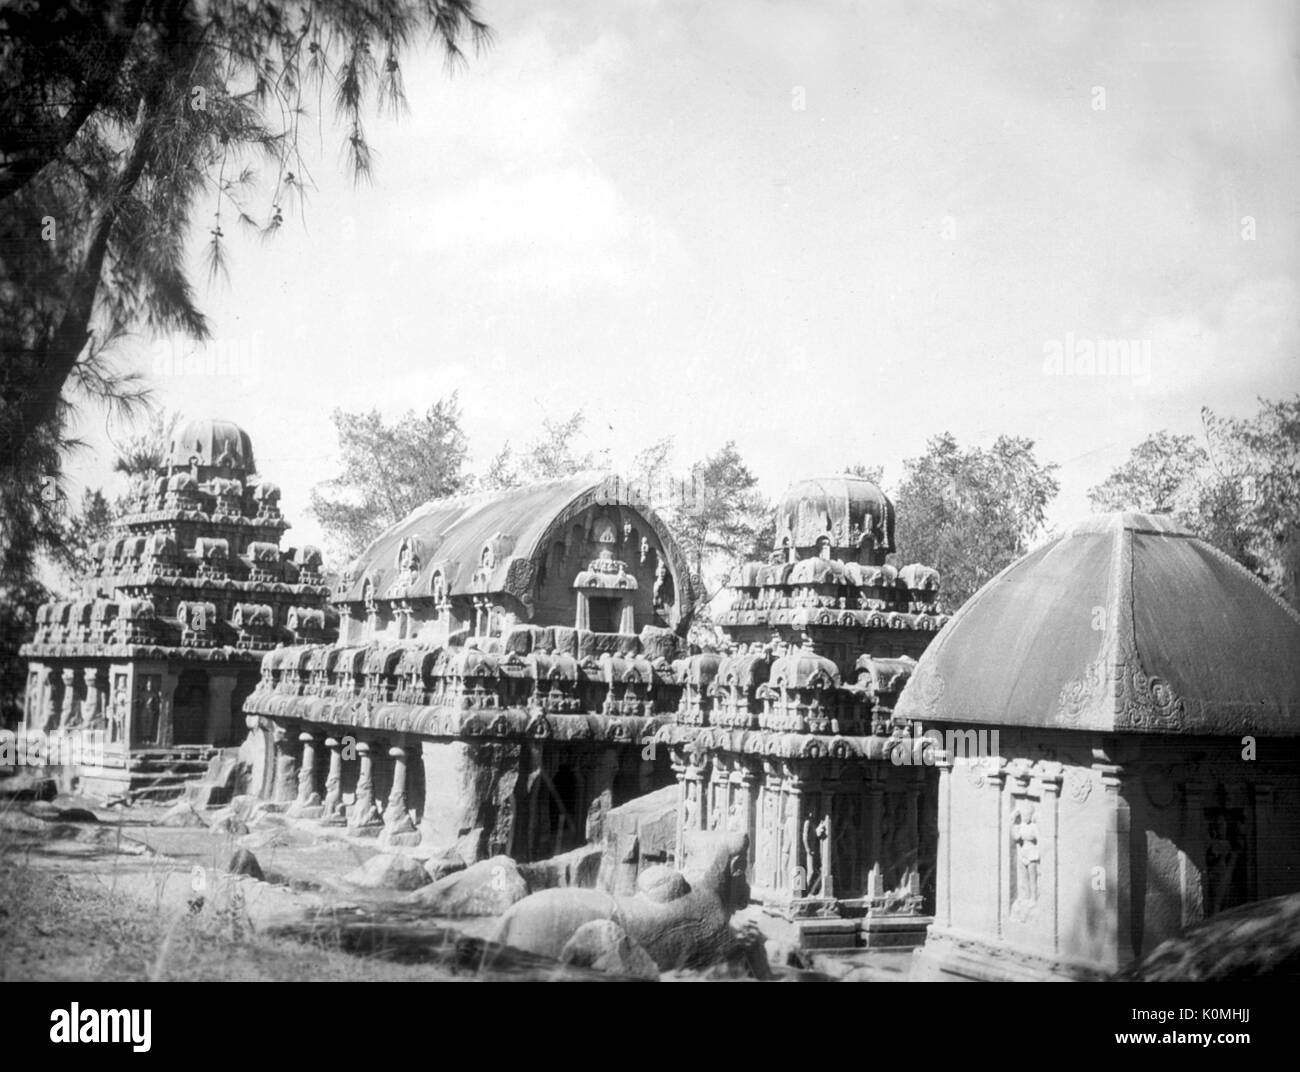 Mahabalipuram madras india Black and White Stock Photos & Images - Alamy